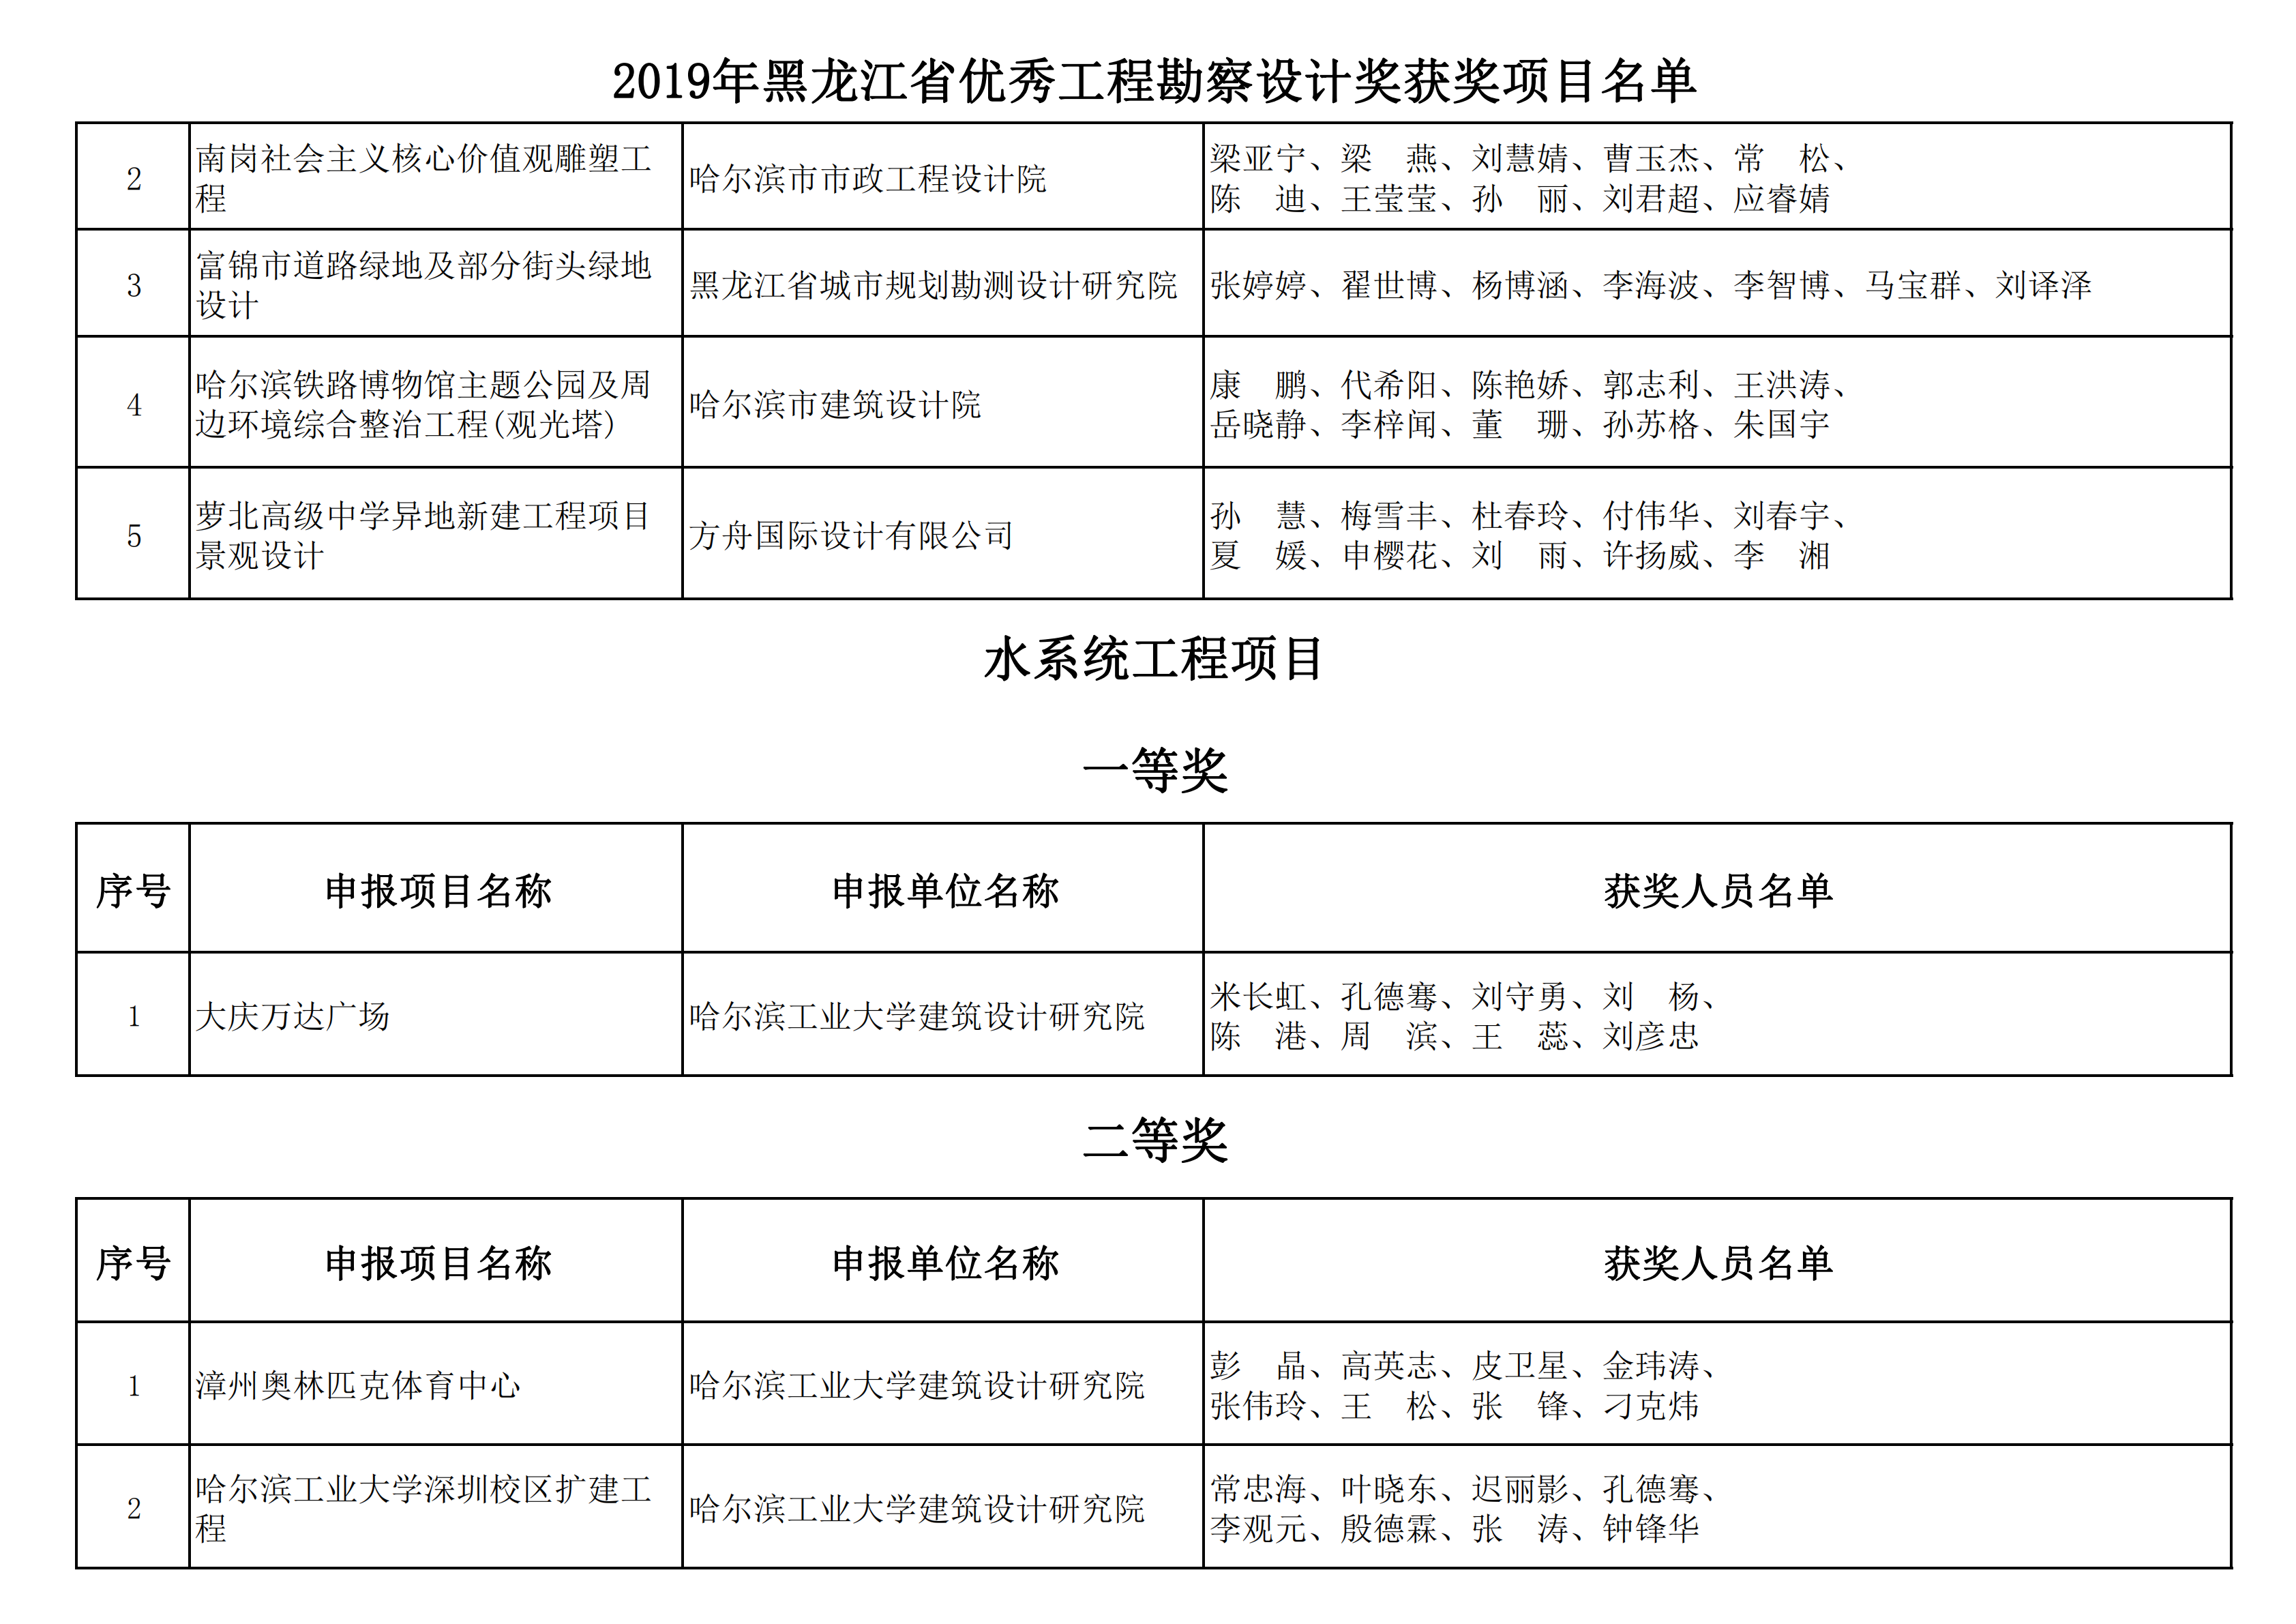 2019年黑龙江省优秀工程勘察设计奖获奖项目名单_18.png